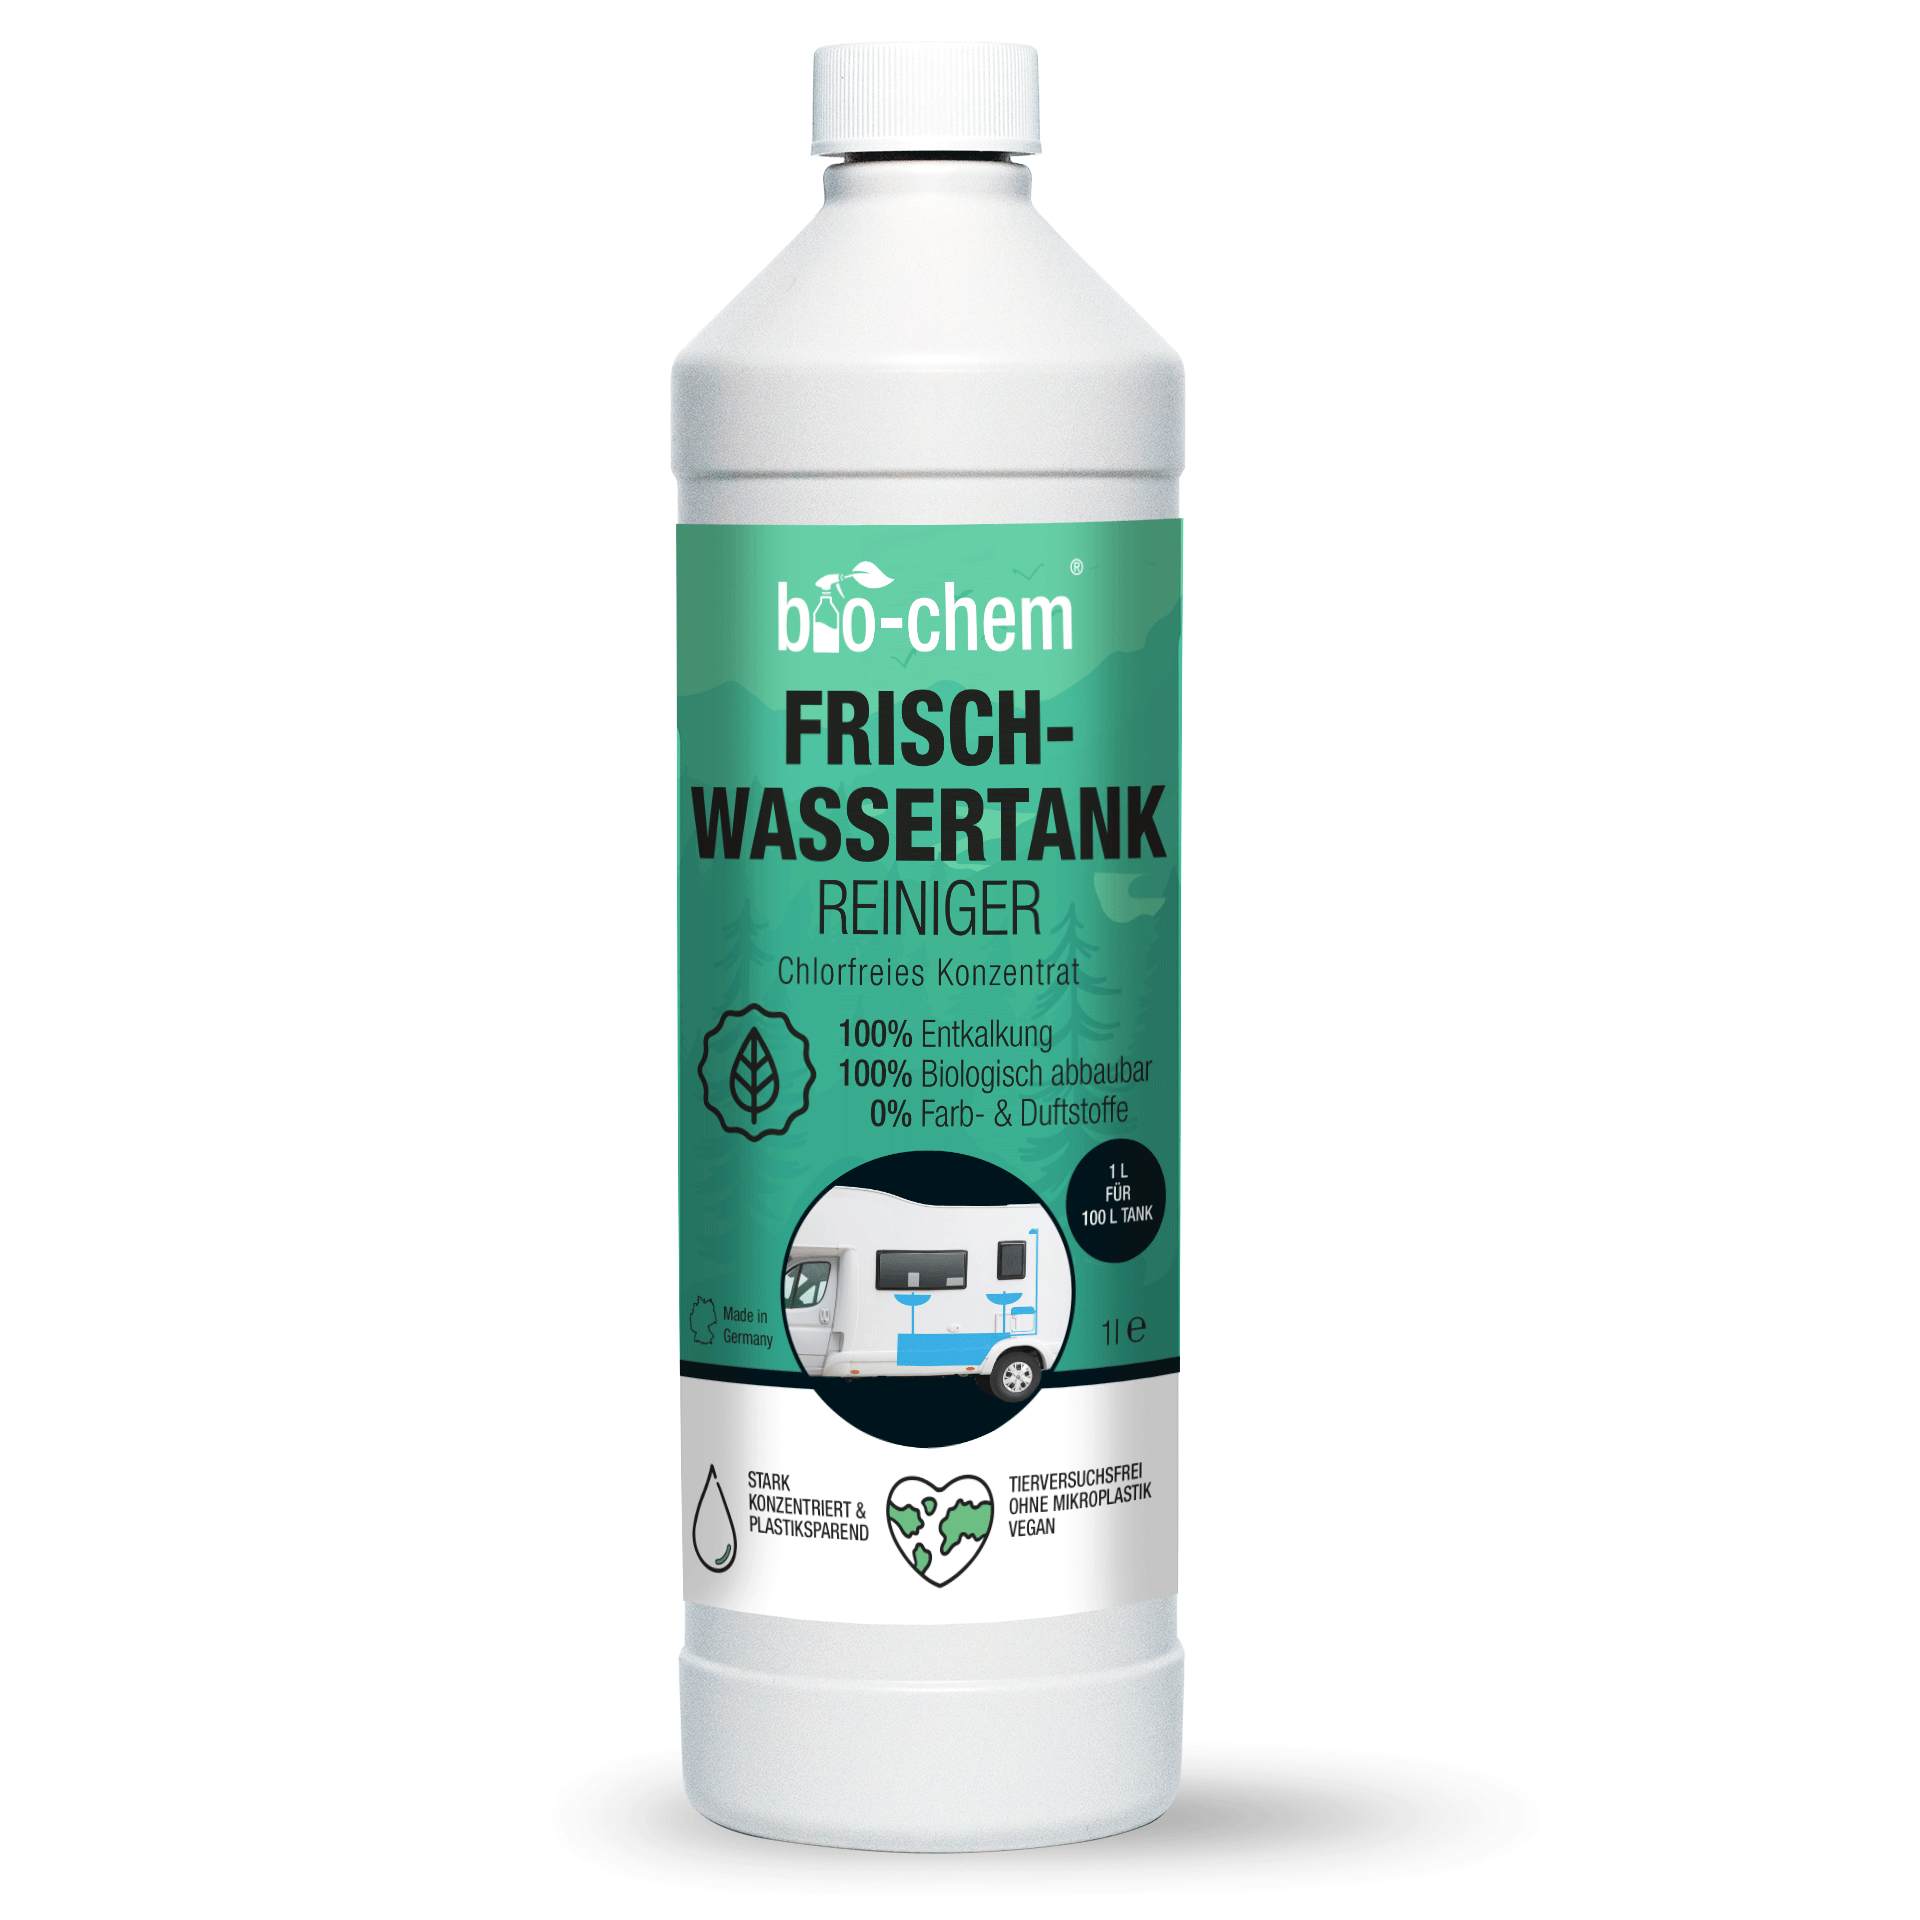 Produktbild 1 Liter Flasche Frischwassertank-Reiniger der Marke bio-chem